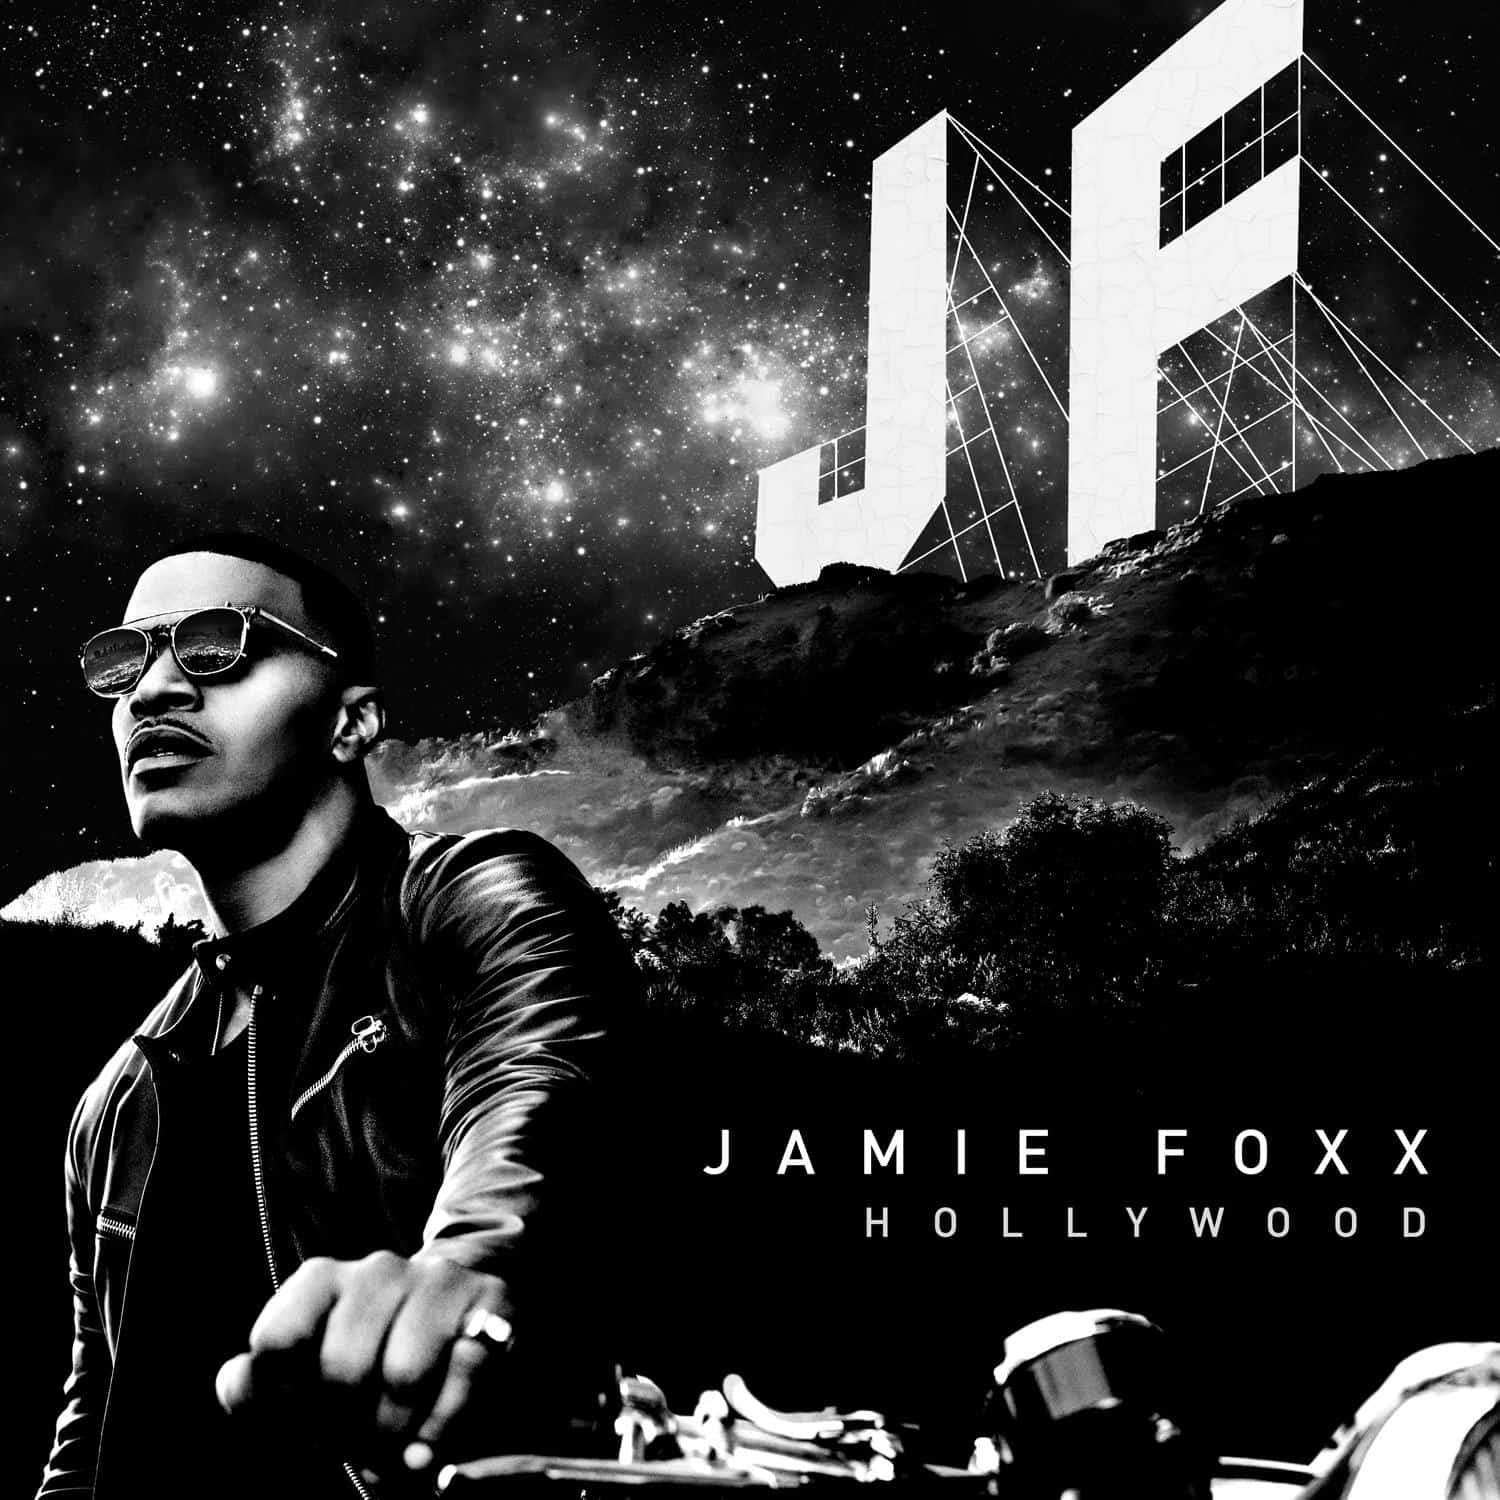 Jamie Foxx powraca z płytą Hollywood - premiera 19 maja! 